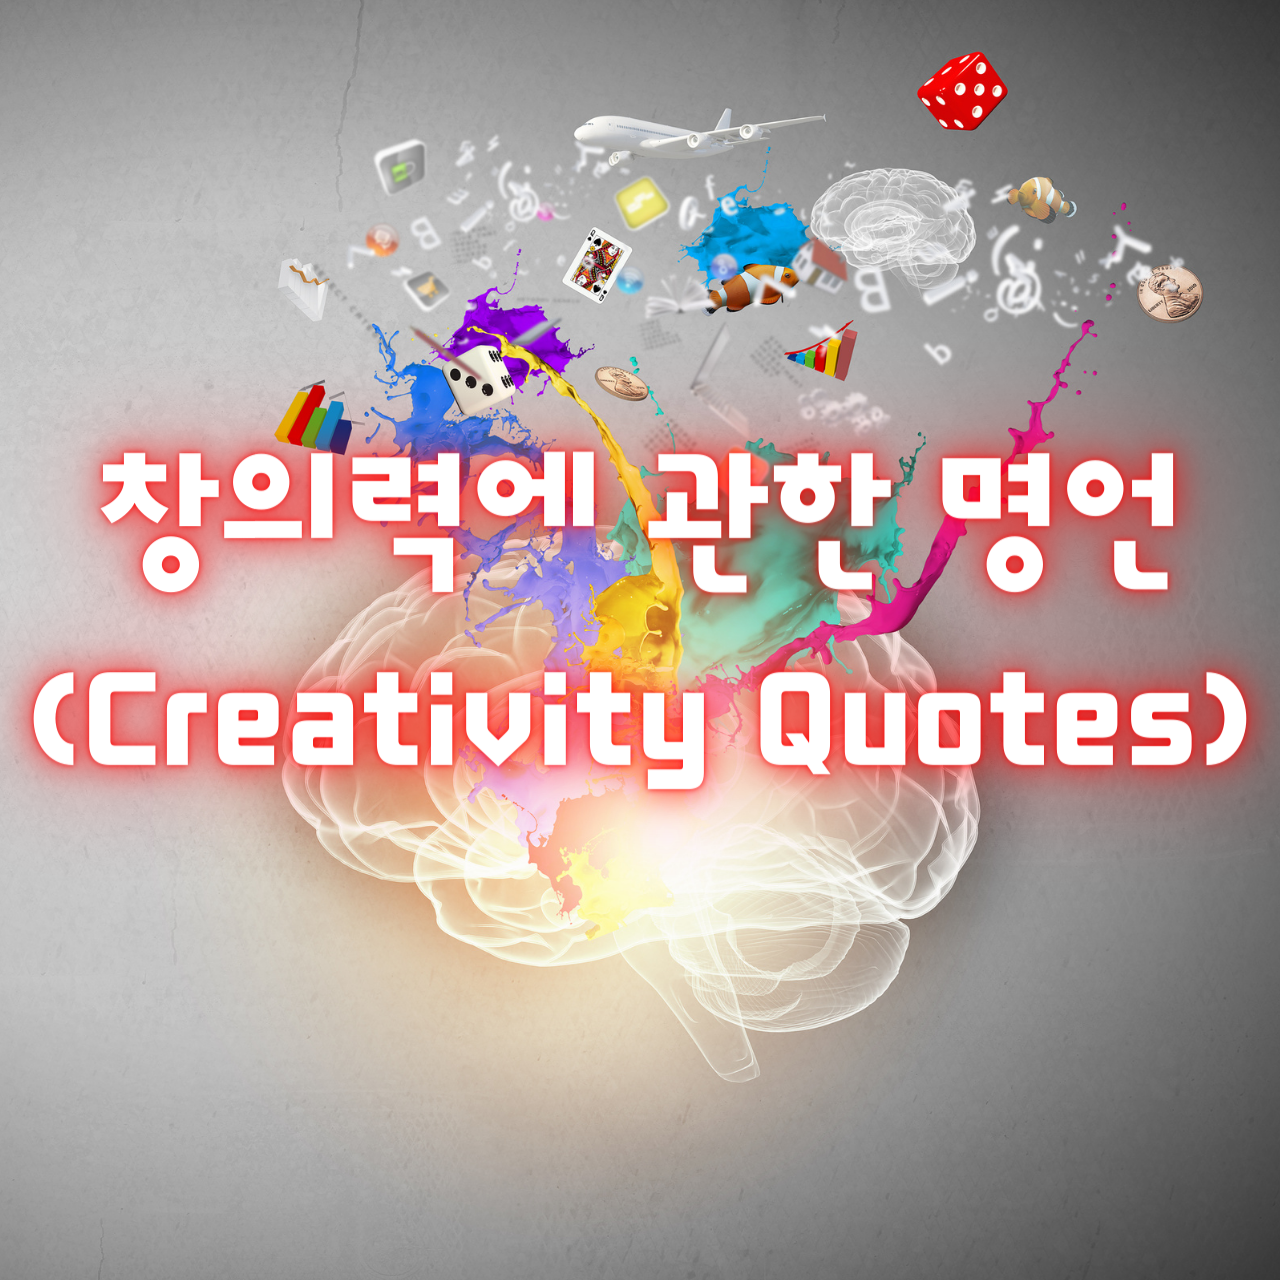 창의력에 관한 명언 (Creativity Quotes)